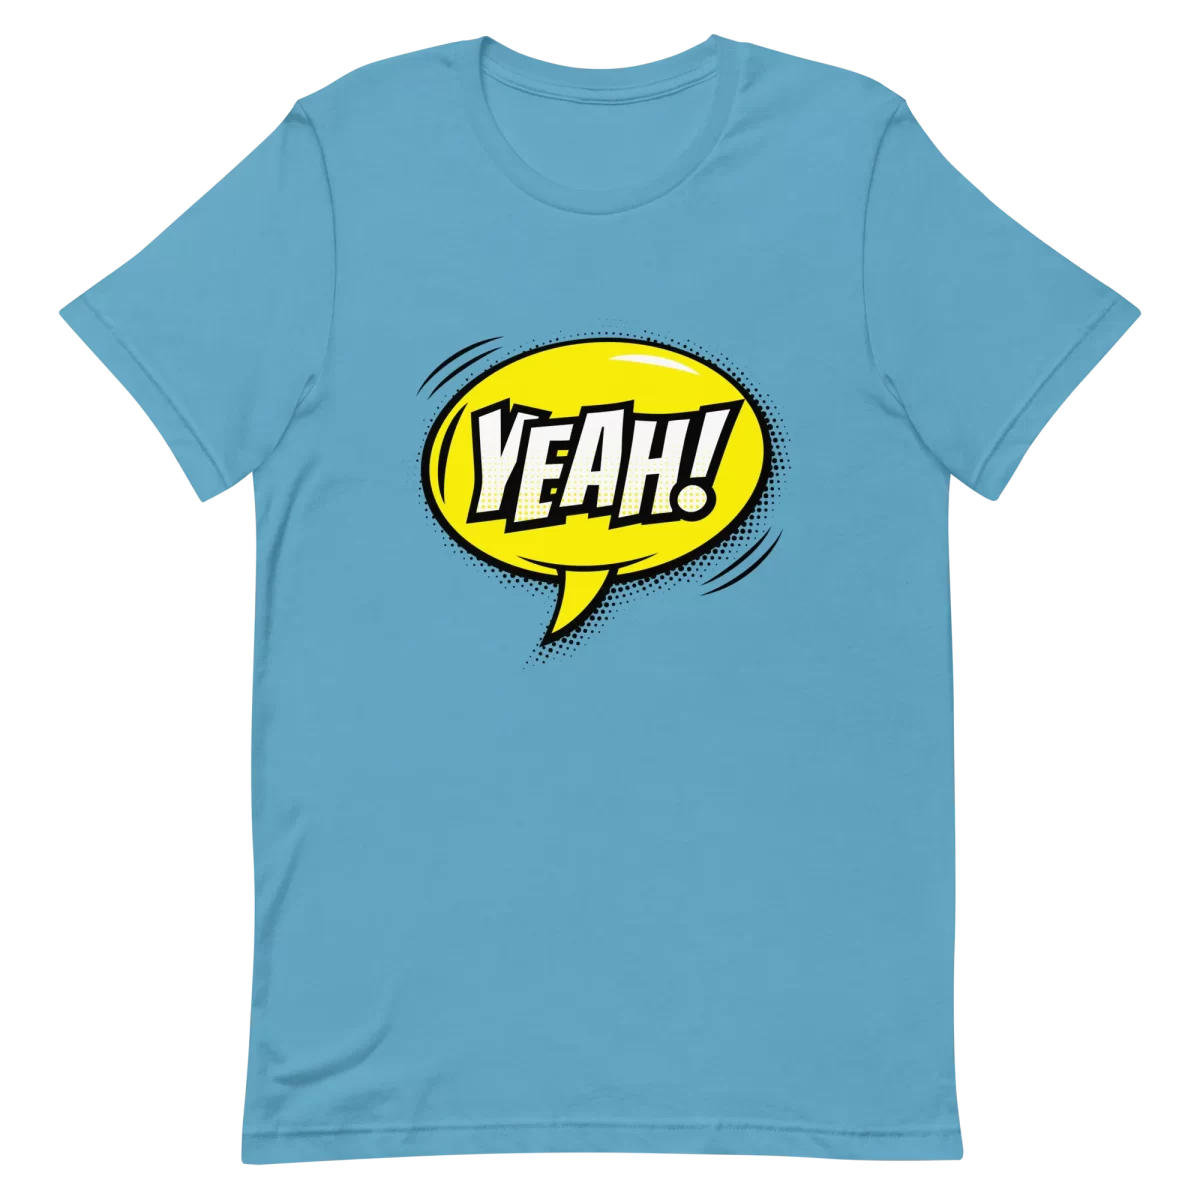 Unisex T-Shirt - YEAH! - Ocean Blue